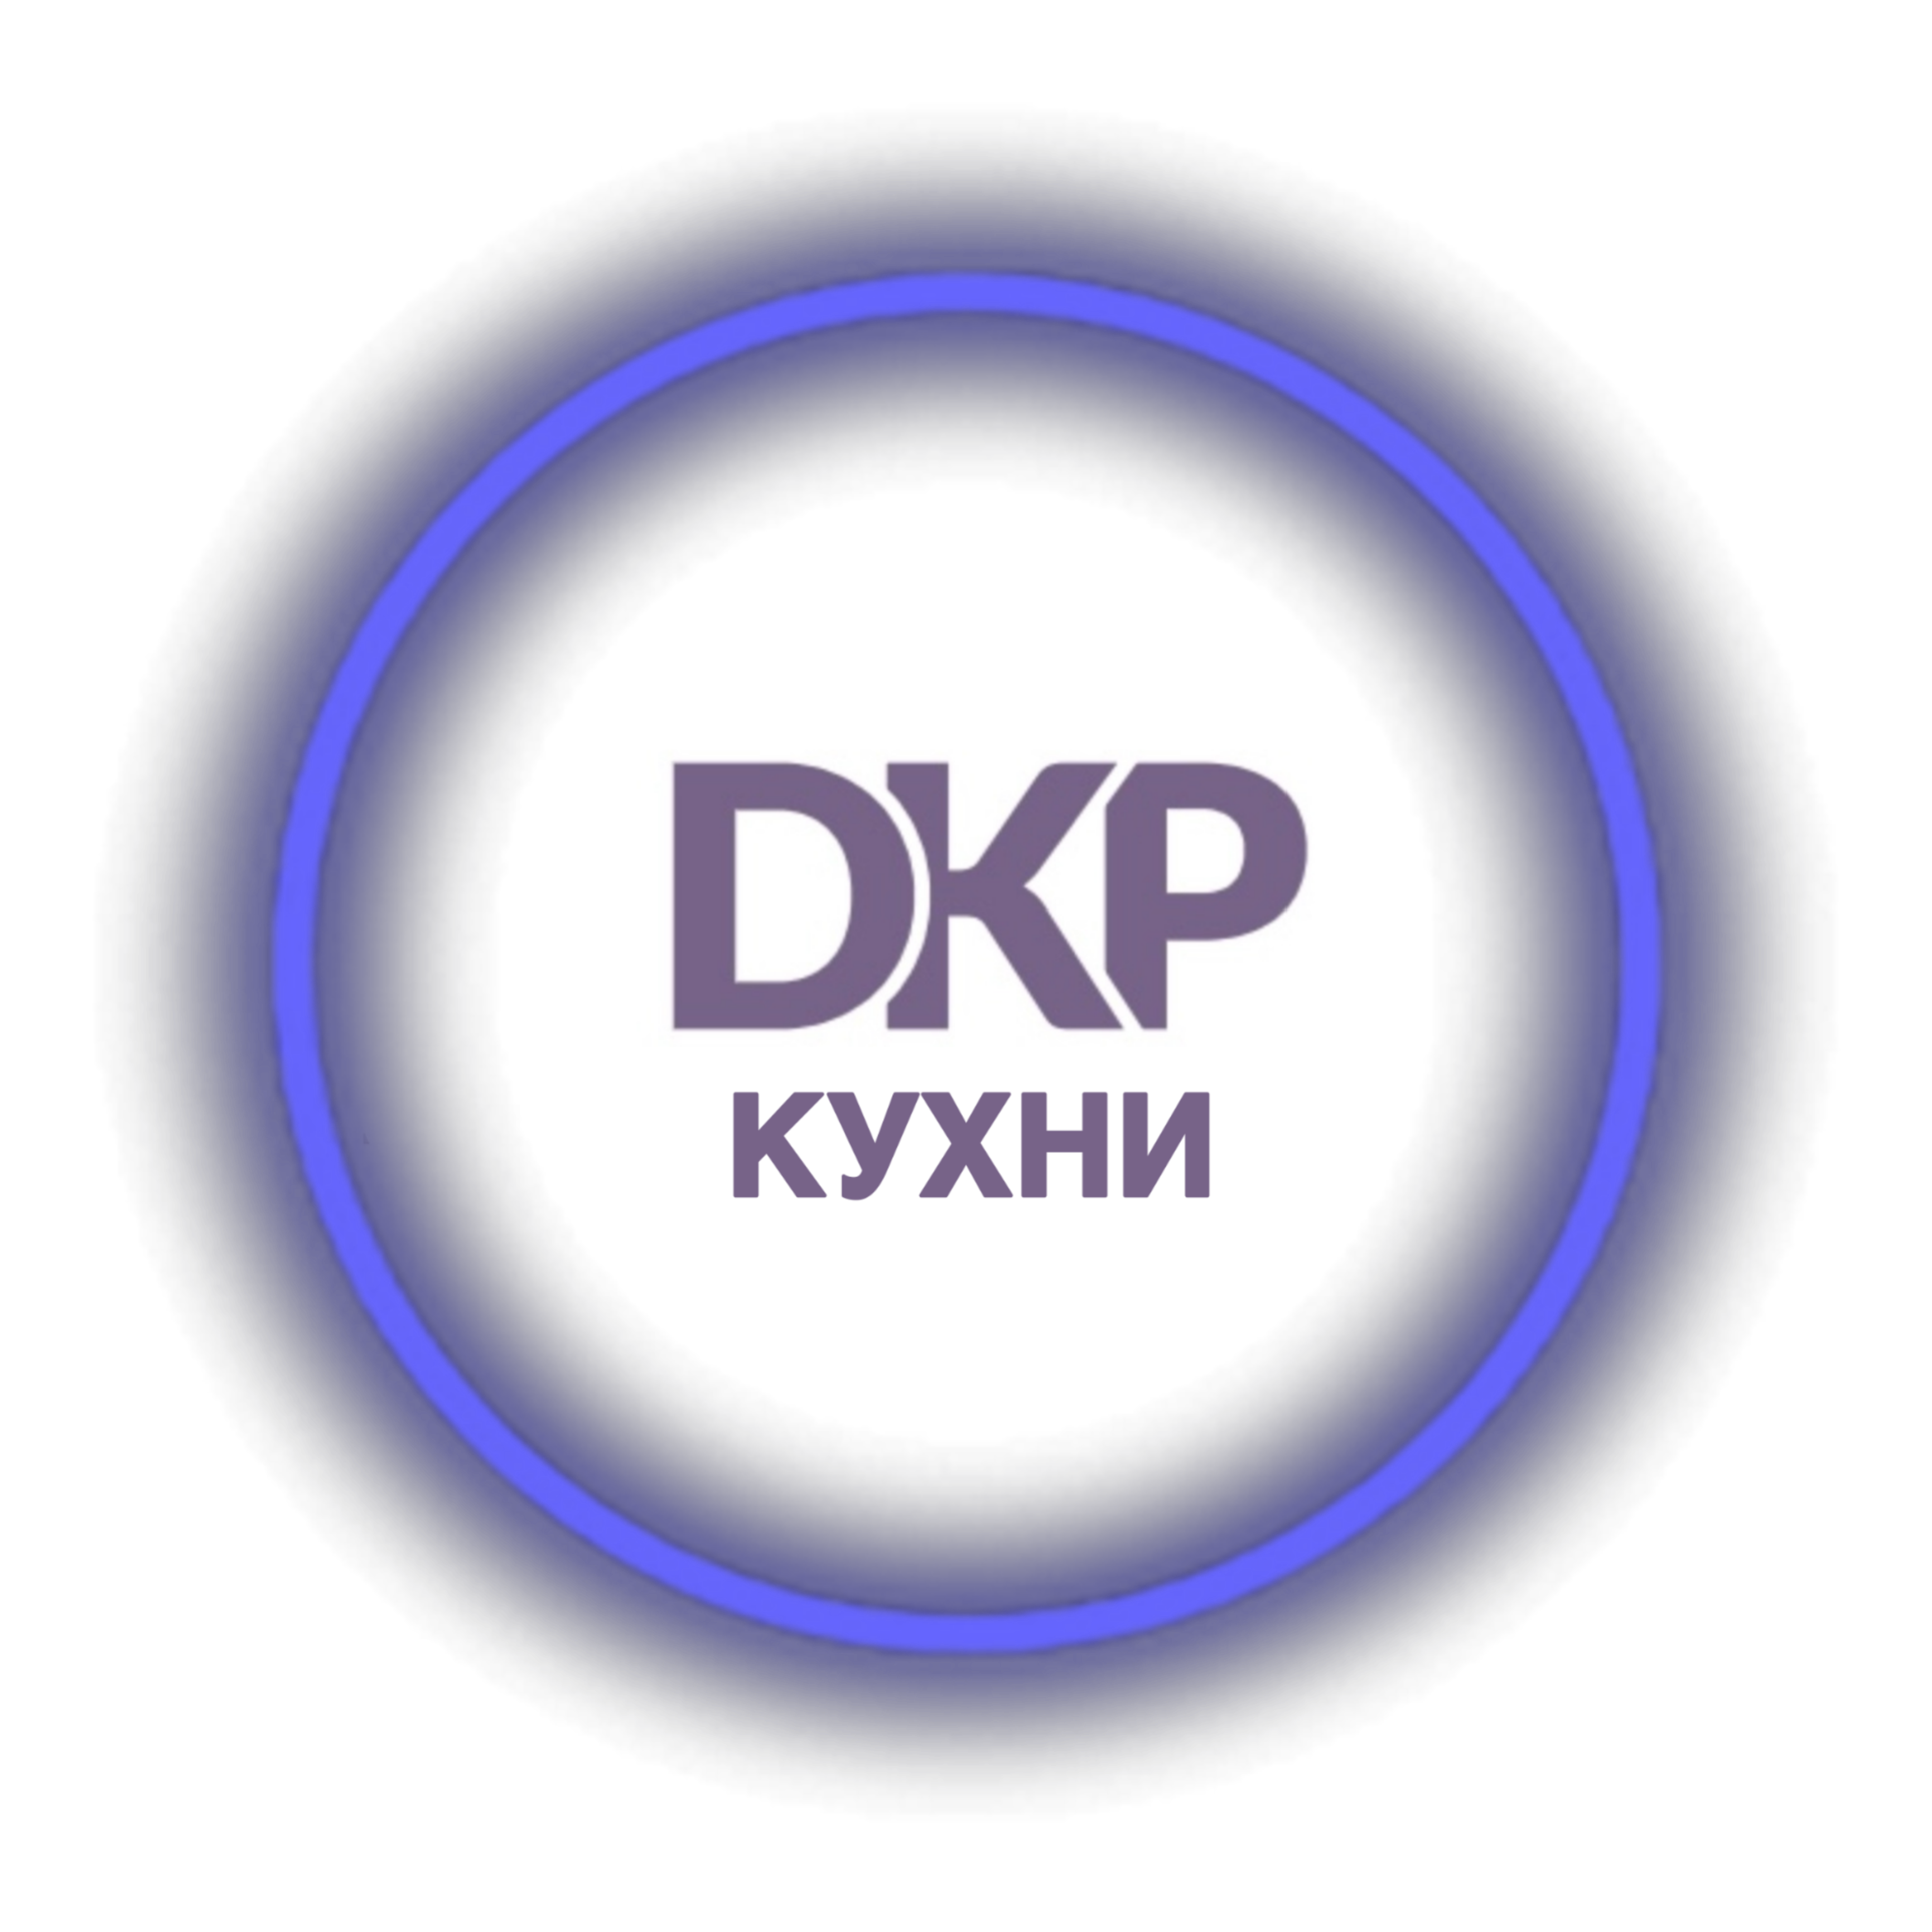 ЧТУП Модульные решения Логотип(logo)